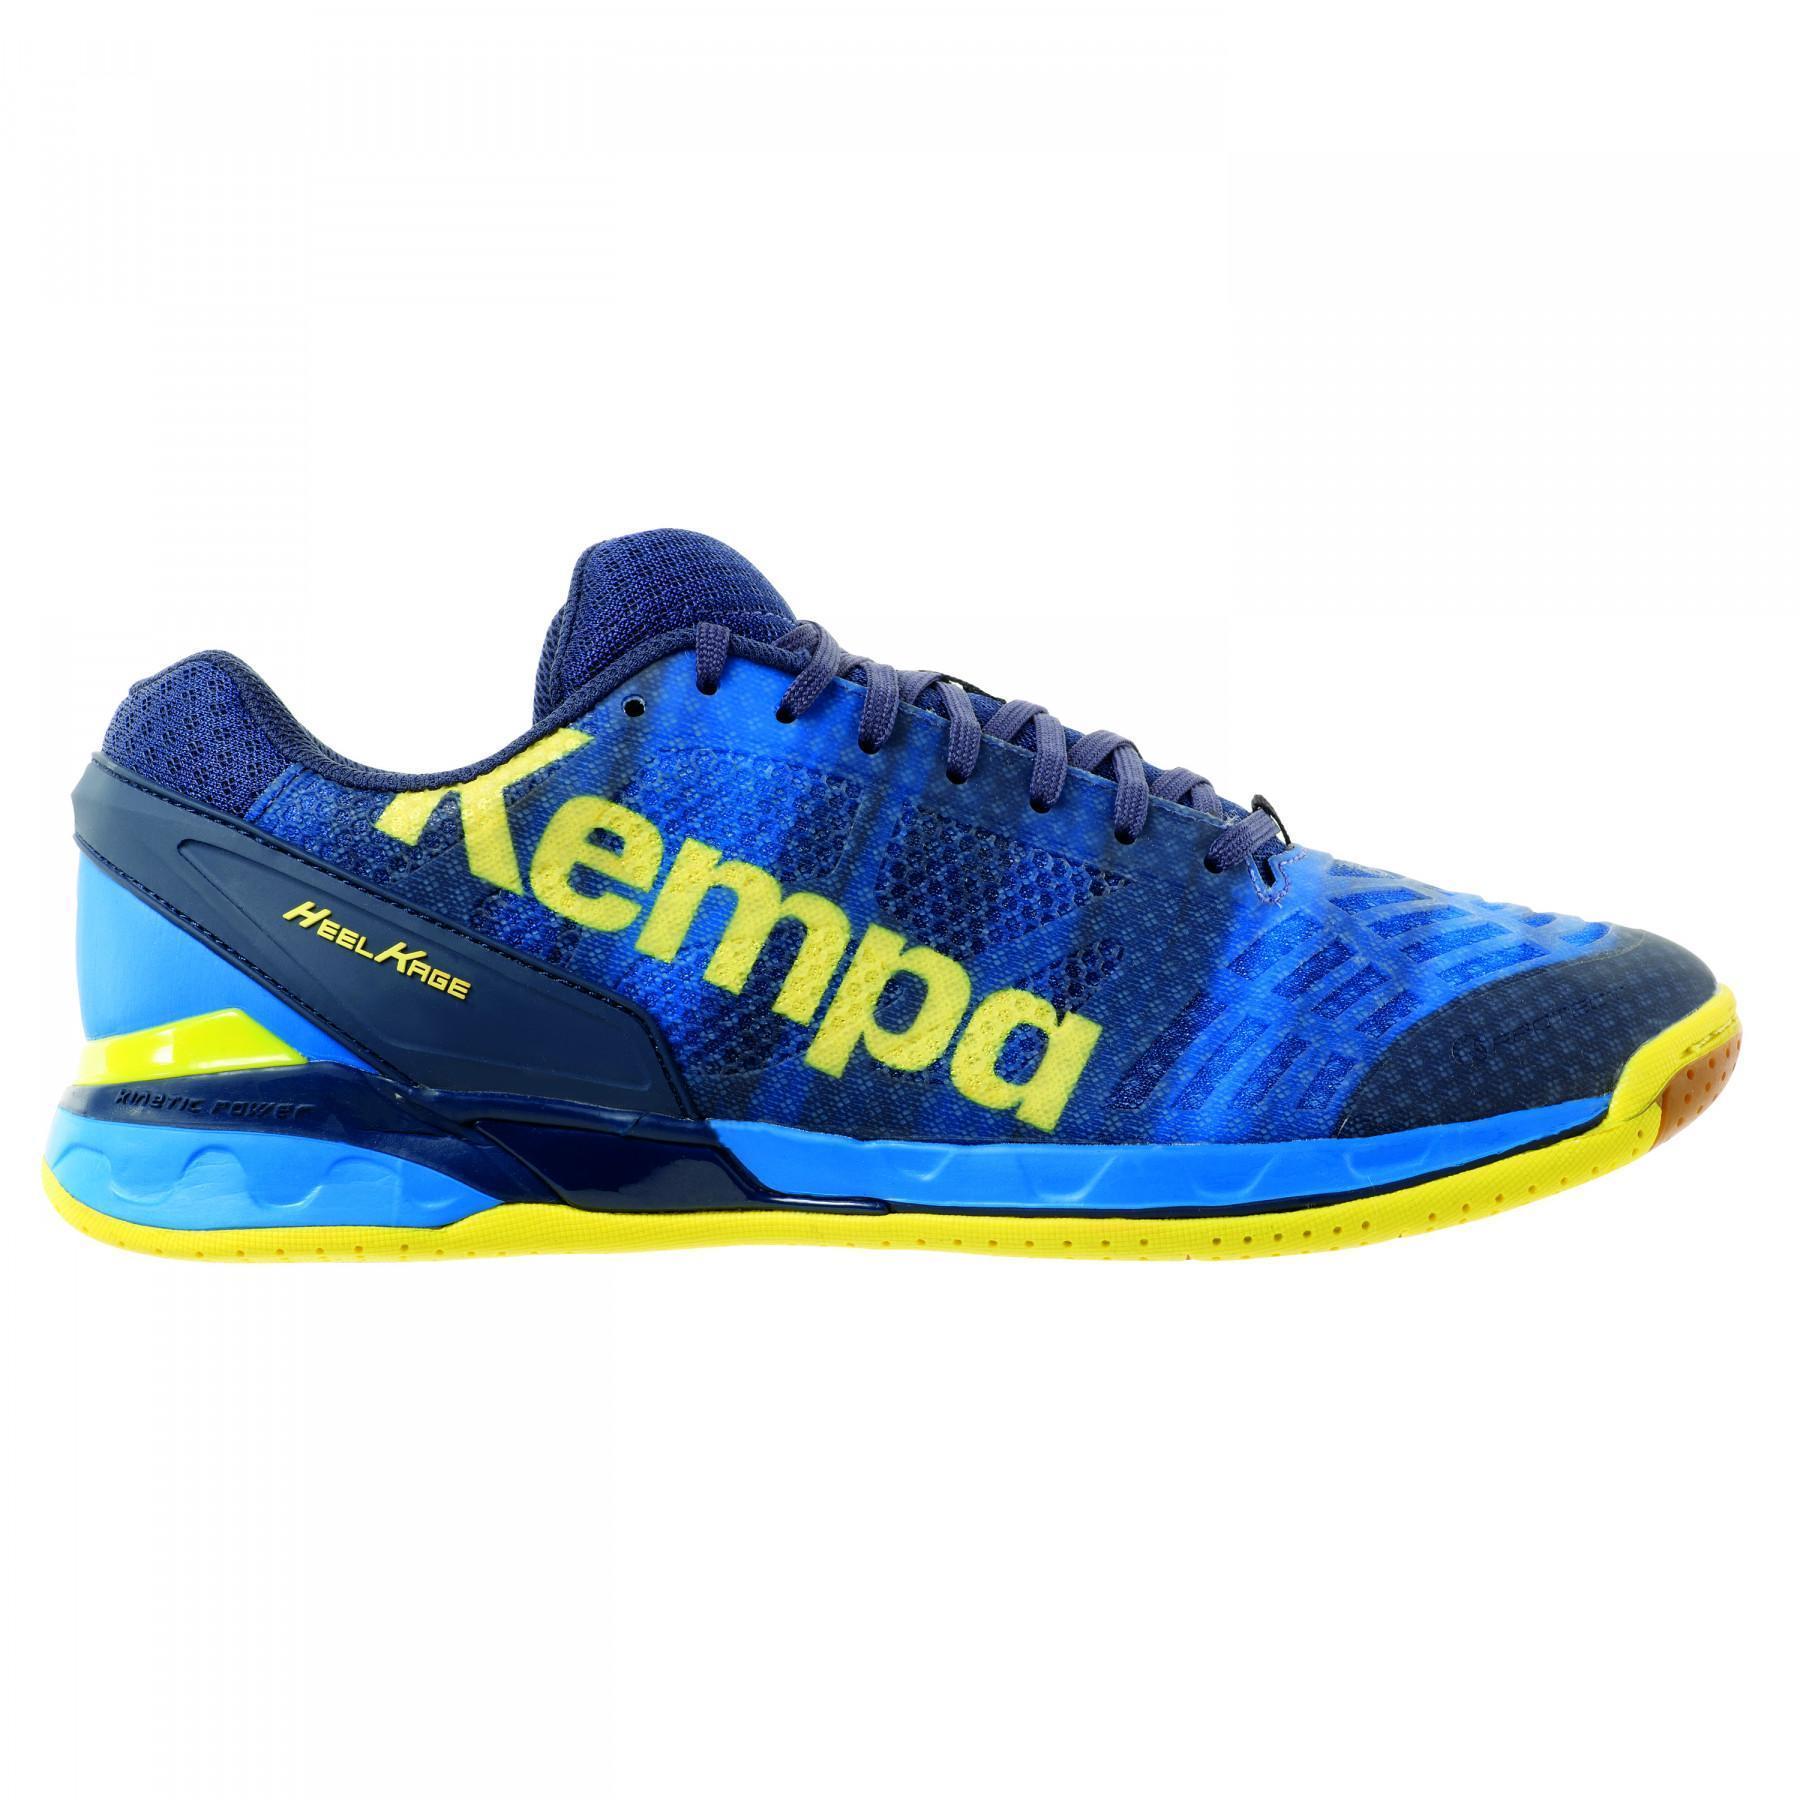 Sapatos Kempa Attack one bleu/jaune